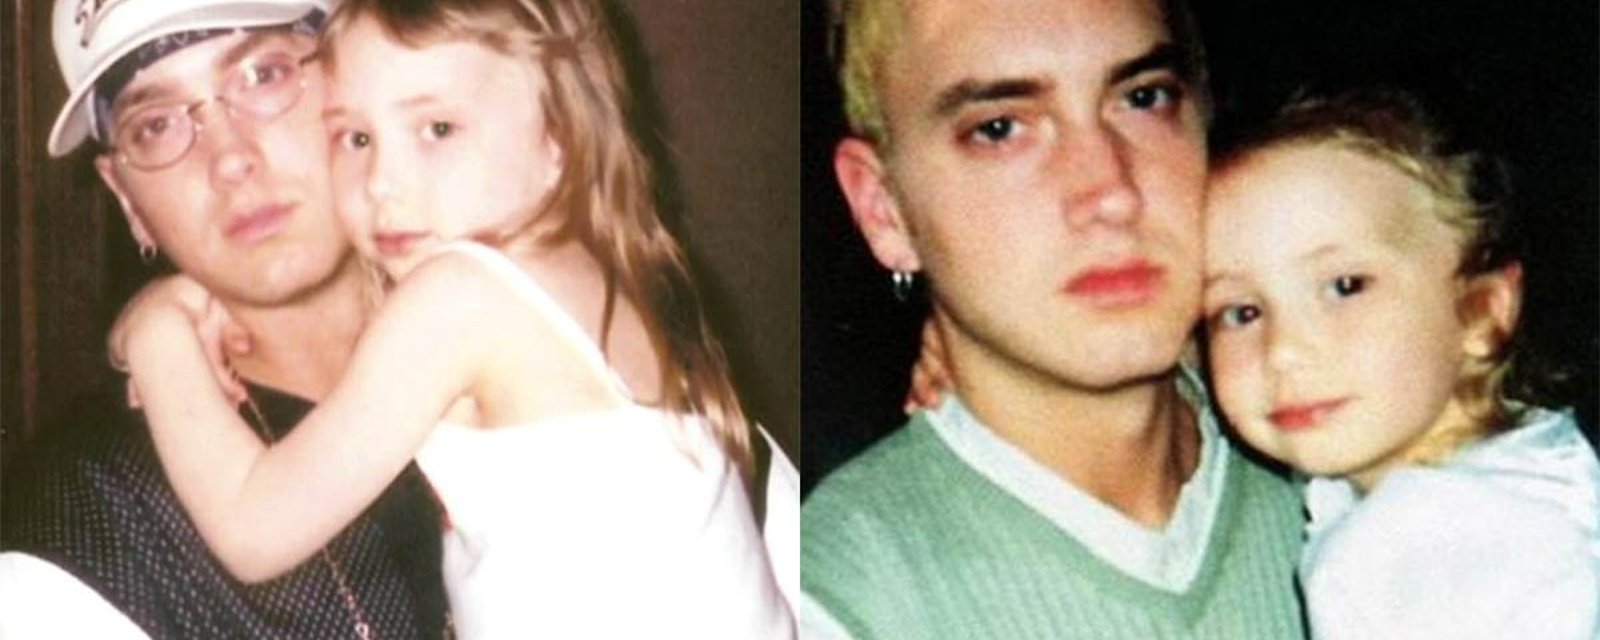 La petite fille d'Eminem est maintenant une femme... une femme MAGNIFIQUE!